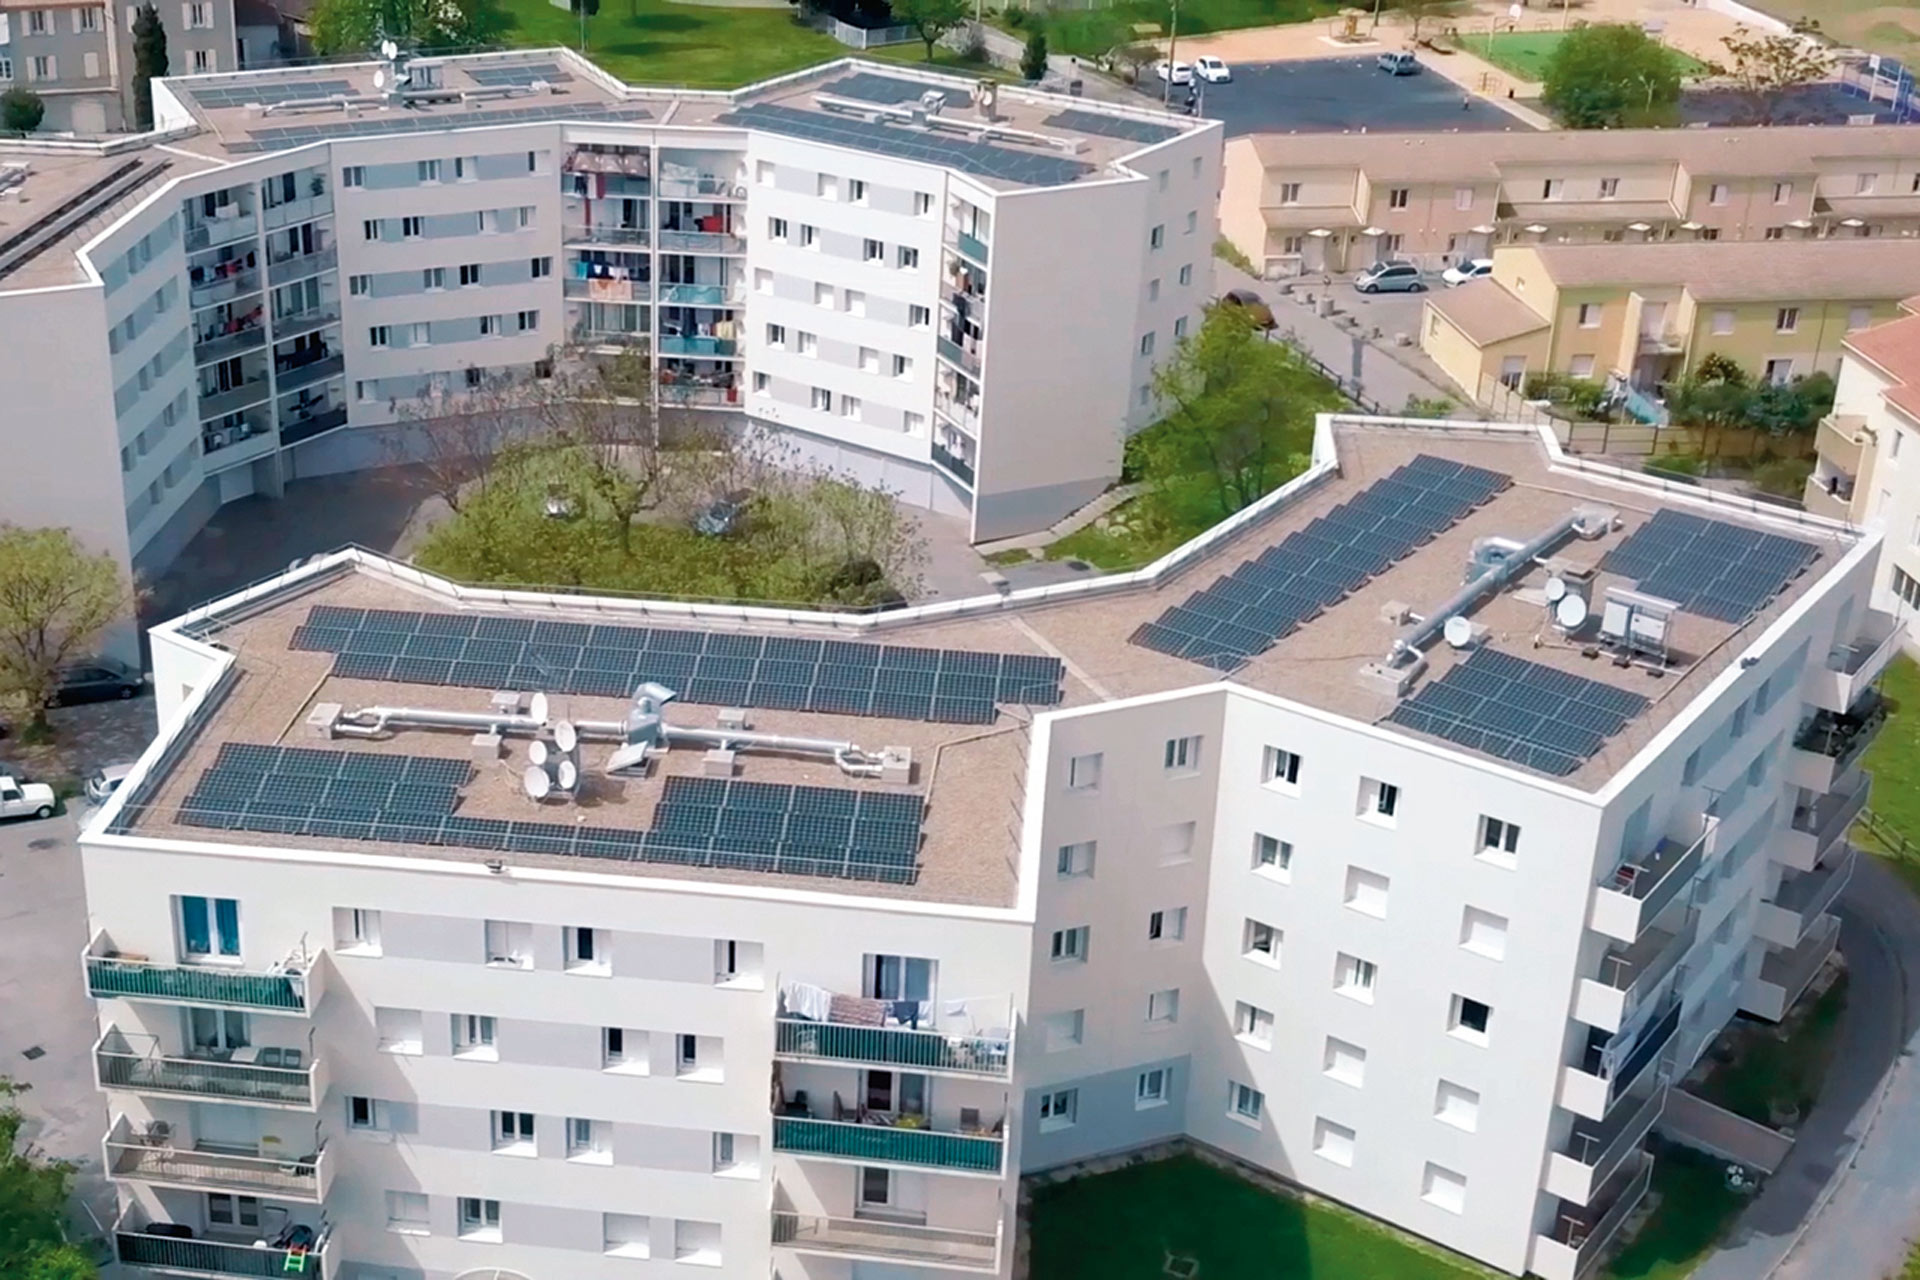 Le projet d’autoconsommation photovoltaïque collective marque une nouvelle façon d’utiliser l’énergie solaire.